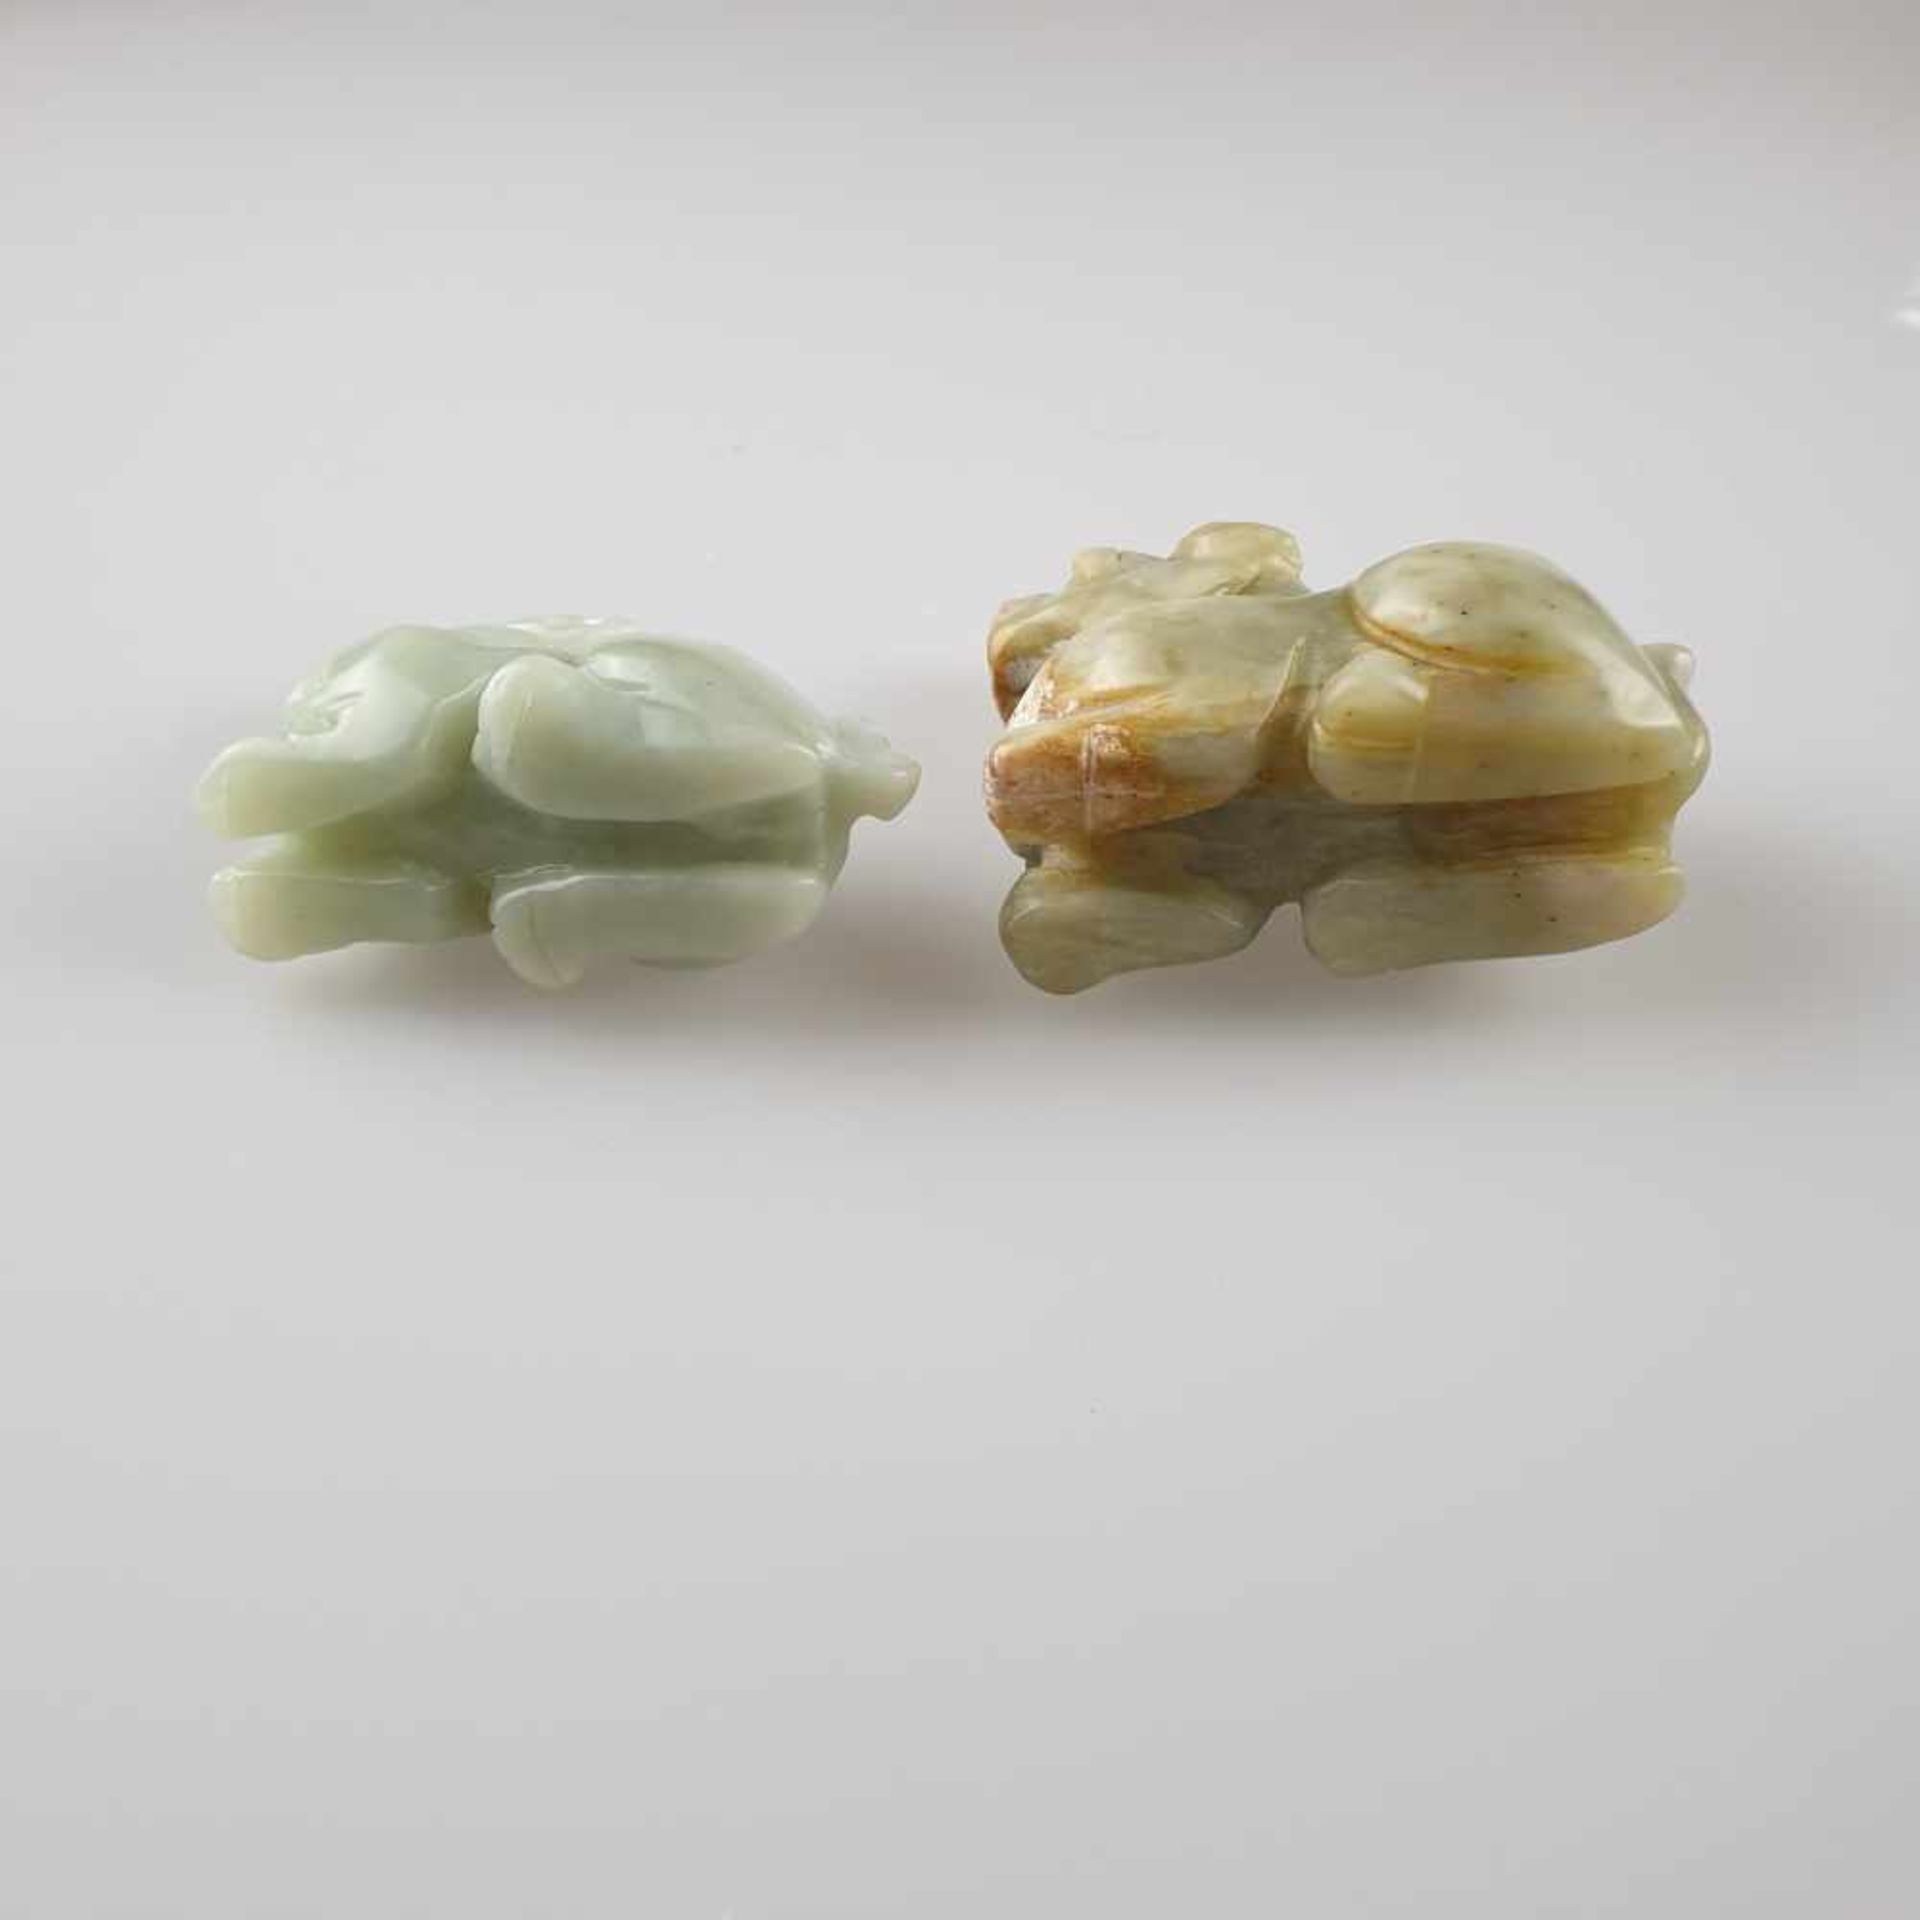 Zwei Miniatur-Fo-Hunde/Chi Tiger - China, vollrunde Schnitzereien aus Onyx, geschliffen und glänzend - Image 9 of 9